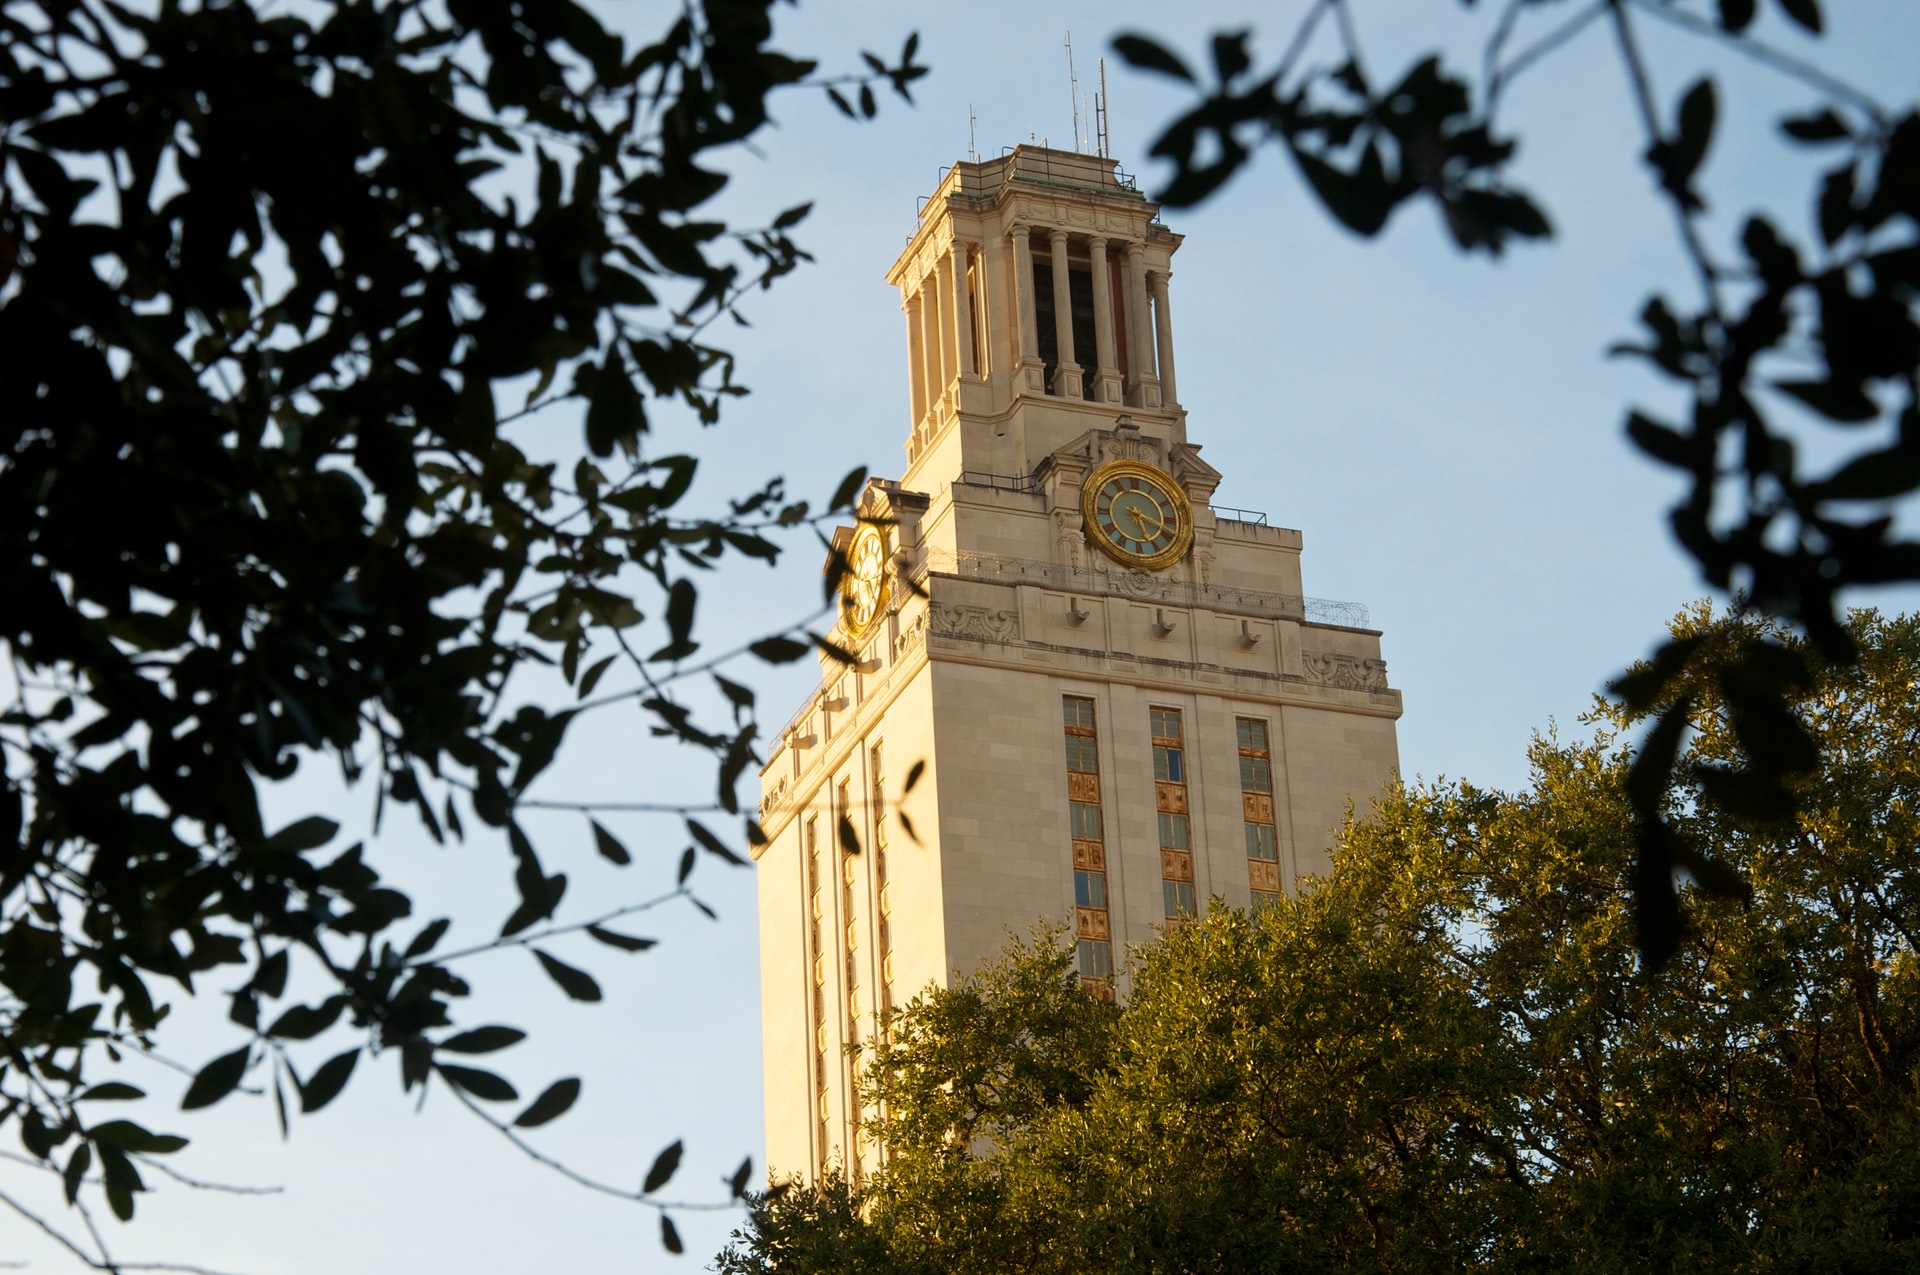 Situada al norte del centro de Austin y sede de la Universidad de Texas, Central North Austin es una zona estupenda para alojarse para aquellos que buscan una zona relativamente tranquila y cerca de todo.